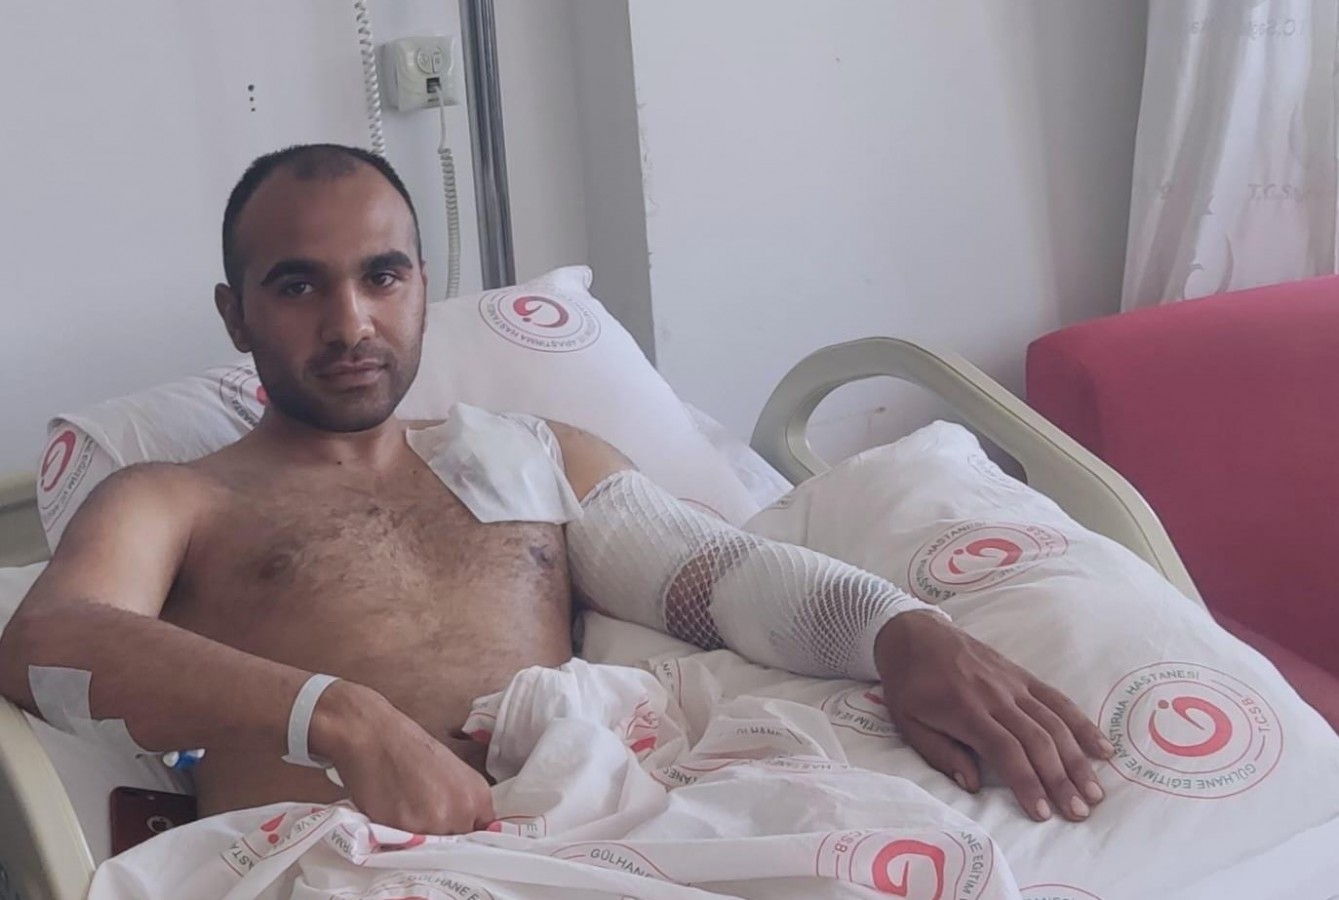 Operasyonda yaralanan Urfalı askerin tedavisi sürüyor